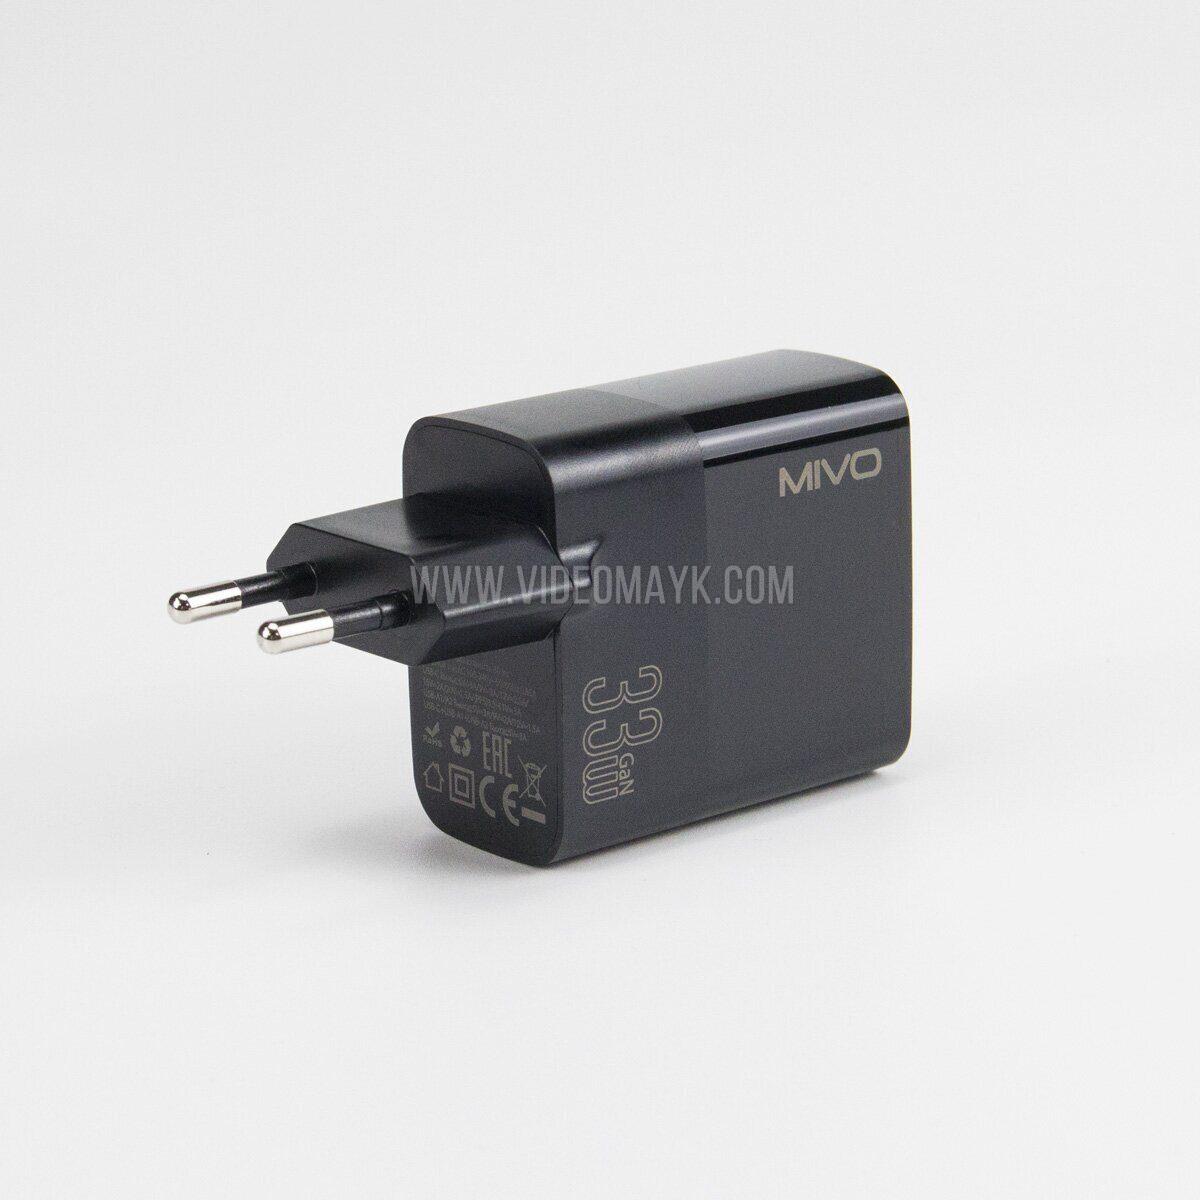 Сетевое зарядное устройство Mivo MP-300Q, 33W, Type-C, 2xUSB